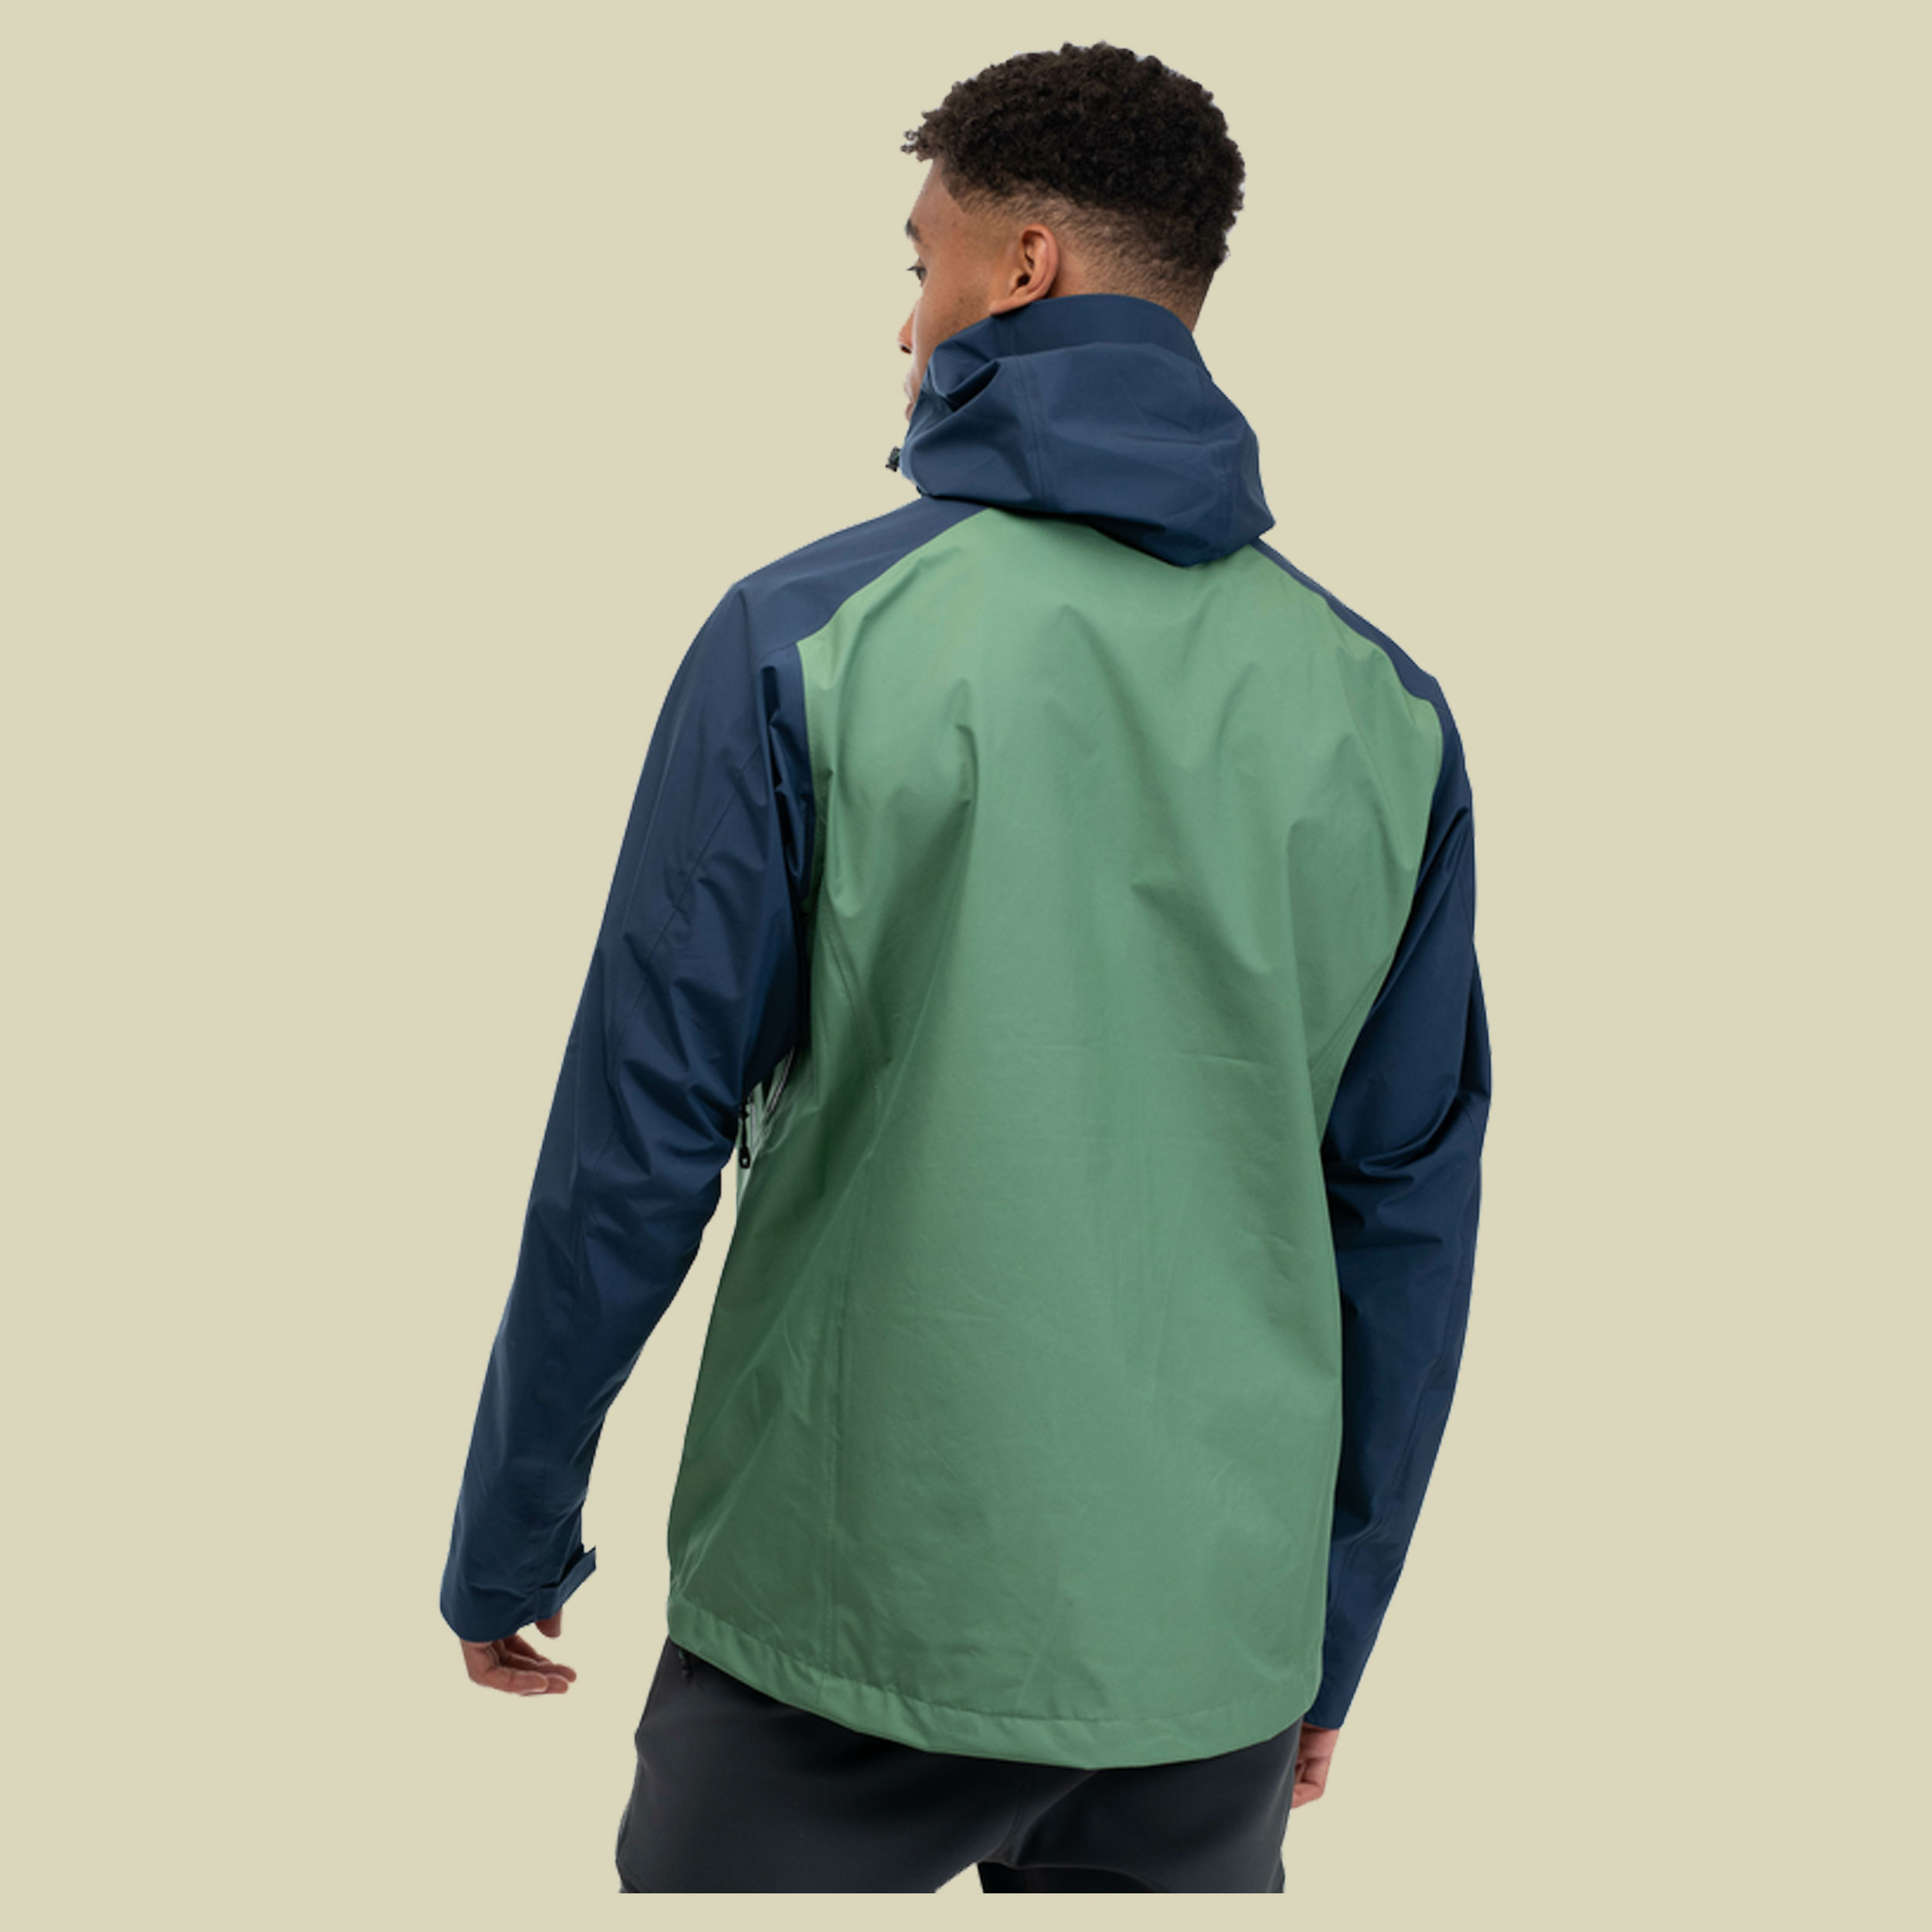 Skar Light 3L Shell Jacket Men Größe XL Farbe dark jade green/navy blue